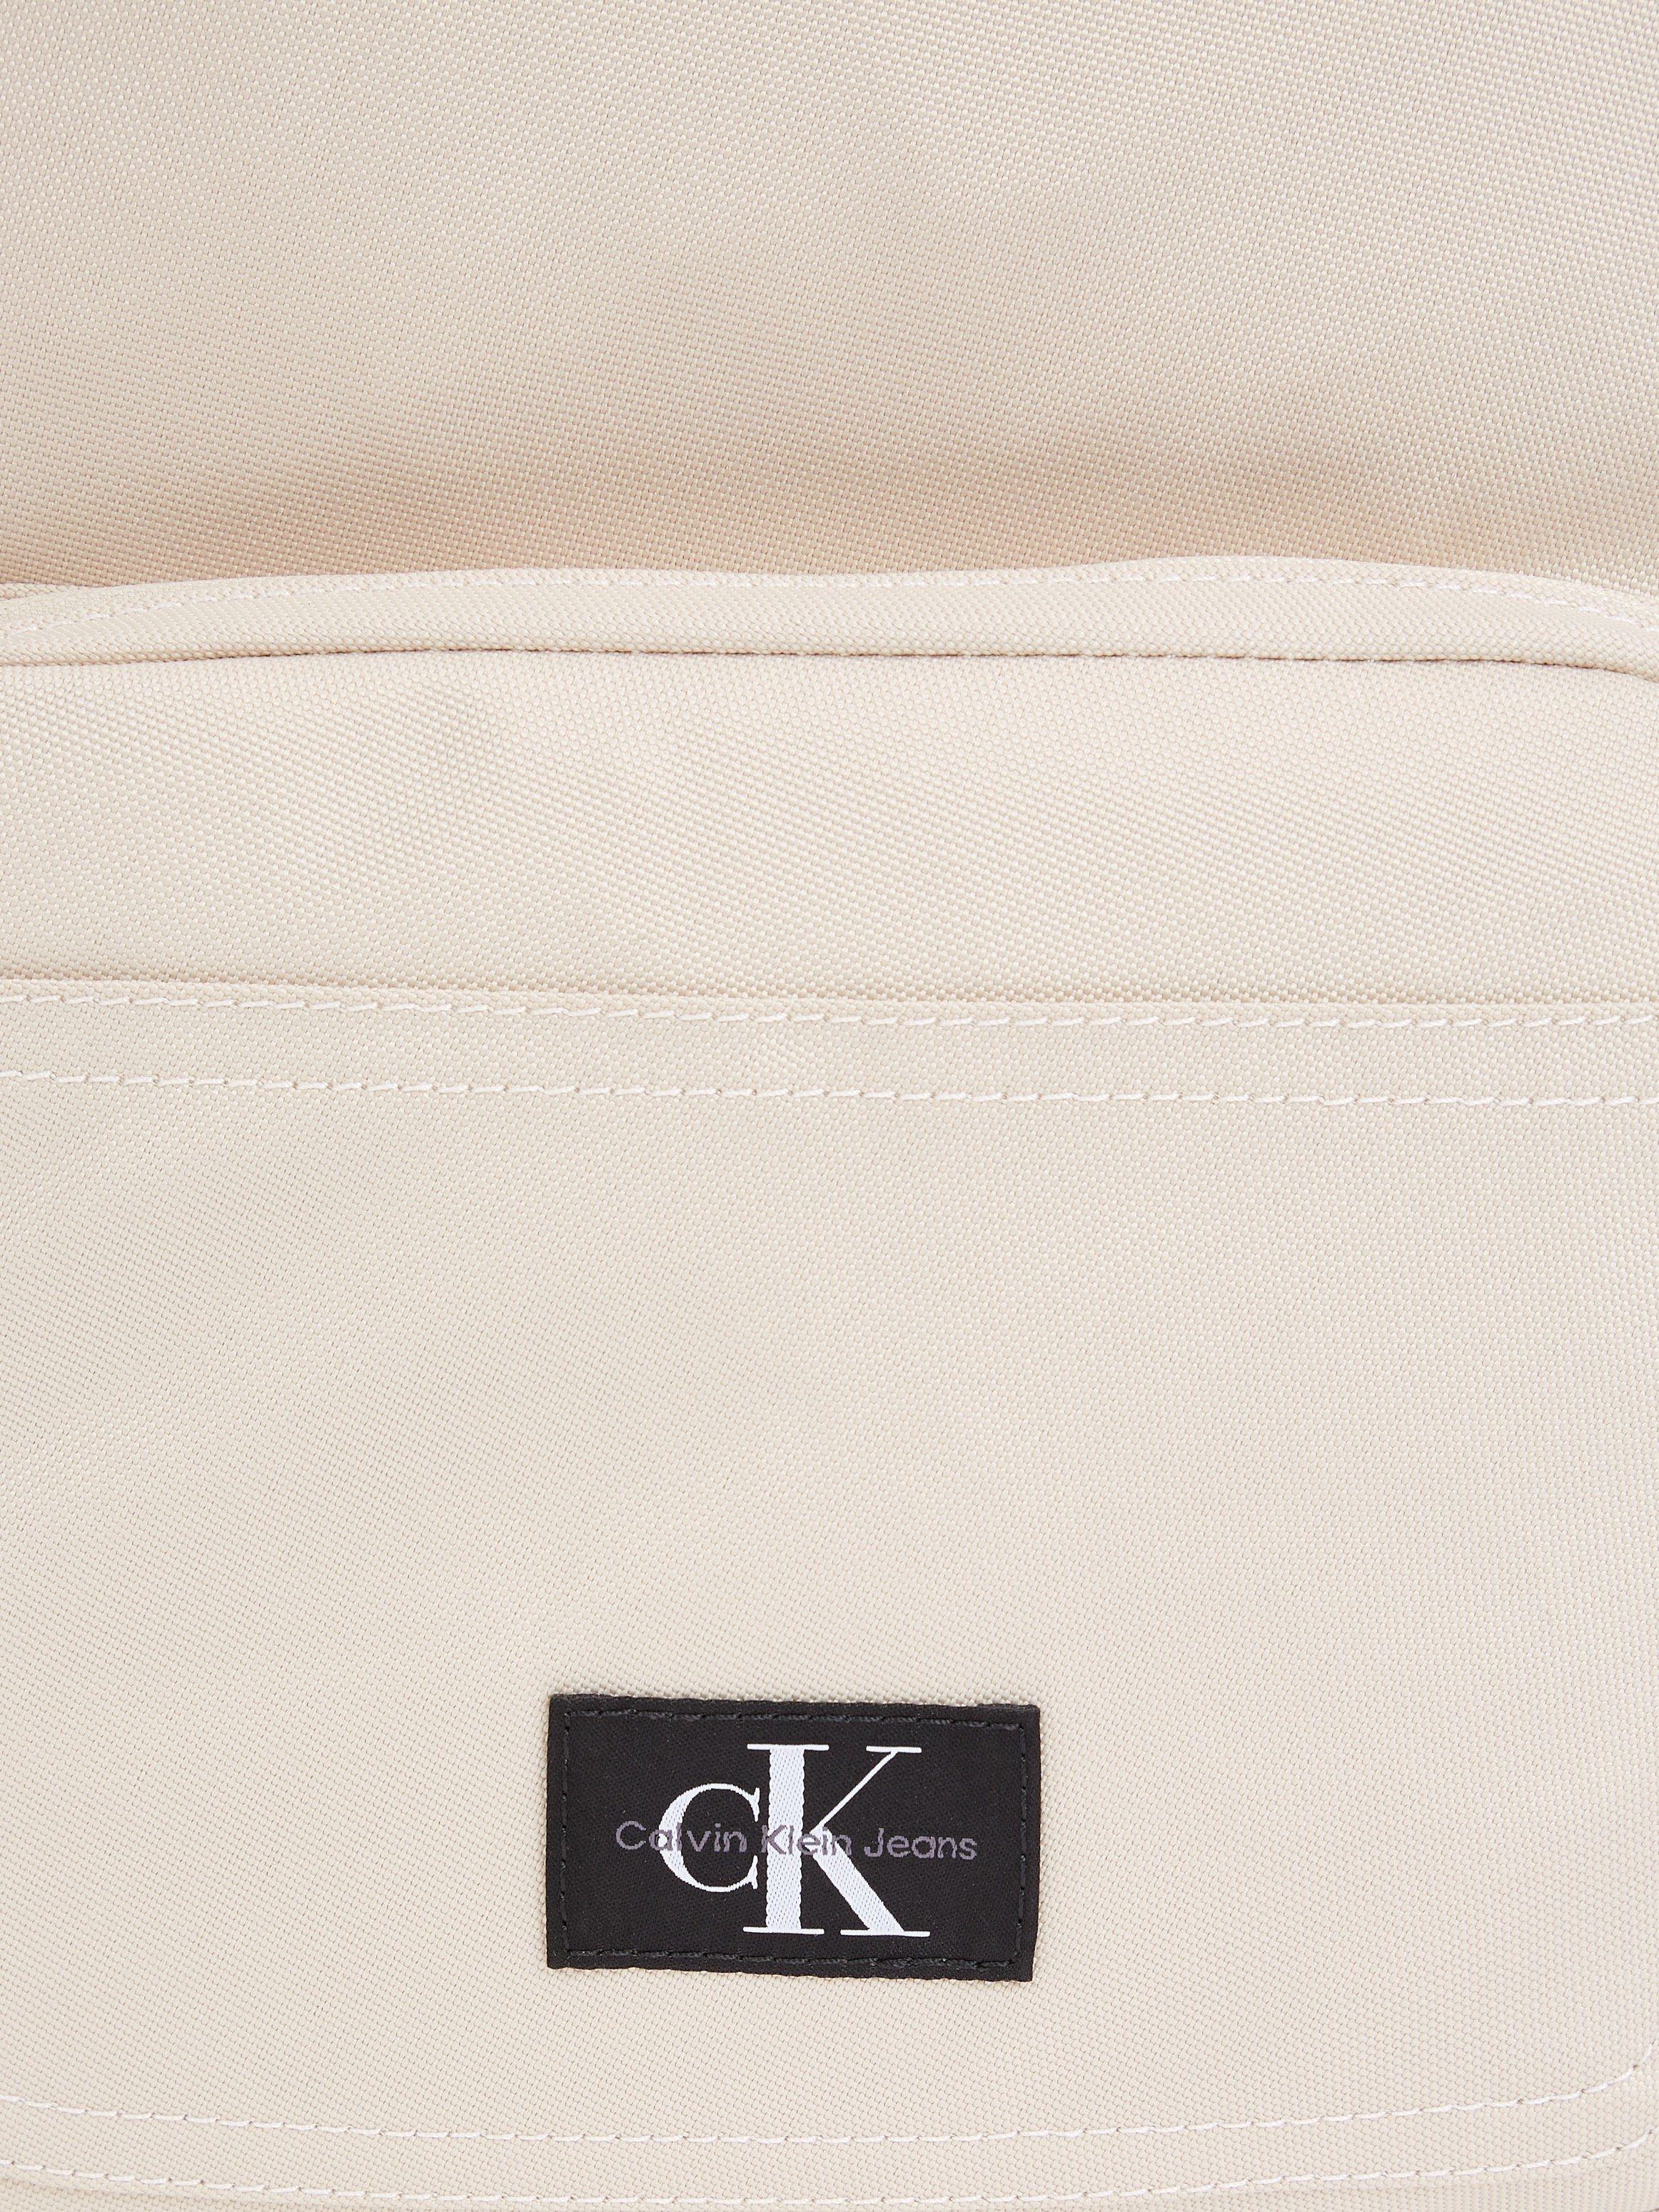 Calvin Klein Jeans Cityrucksack SPORT CAMPUS beige ESSENTIALS W, in dezentem BP40 Design